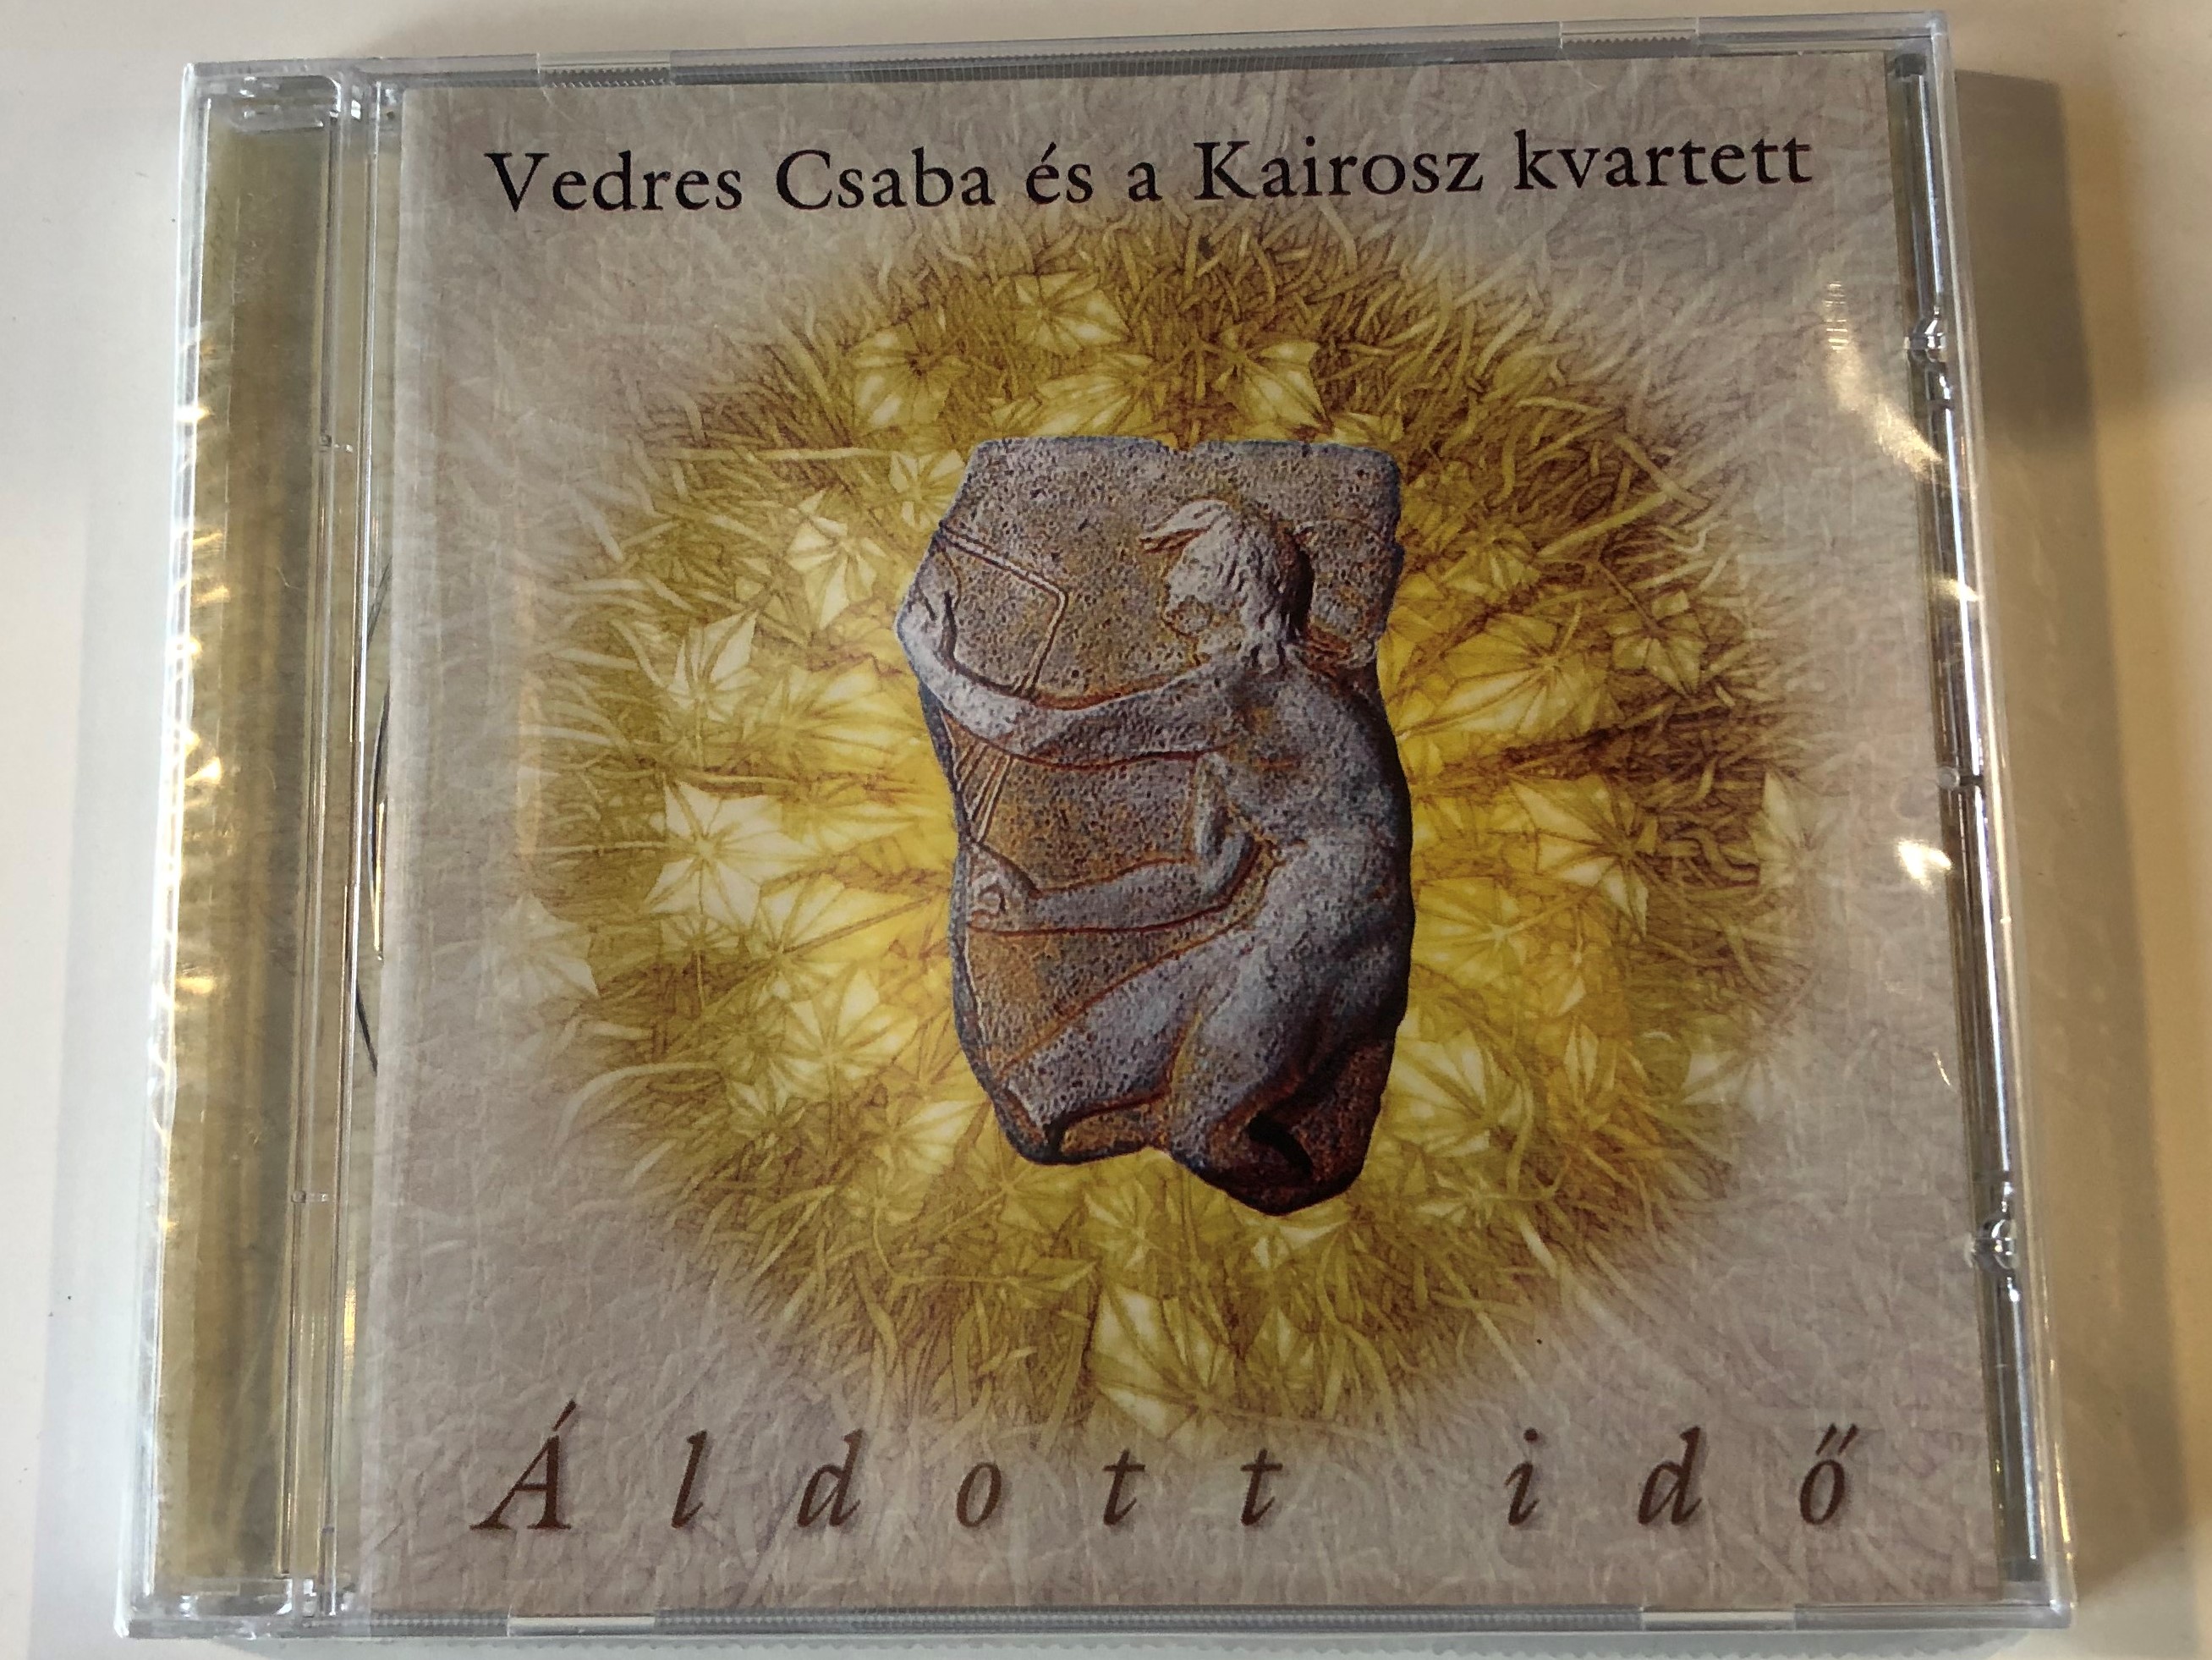 vedres-csaba-s-a-kairosz-kvartett-ldott-id-periferic-records-audio-cd-2006-bgcd-176-1-.jpg